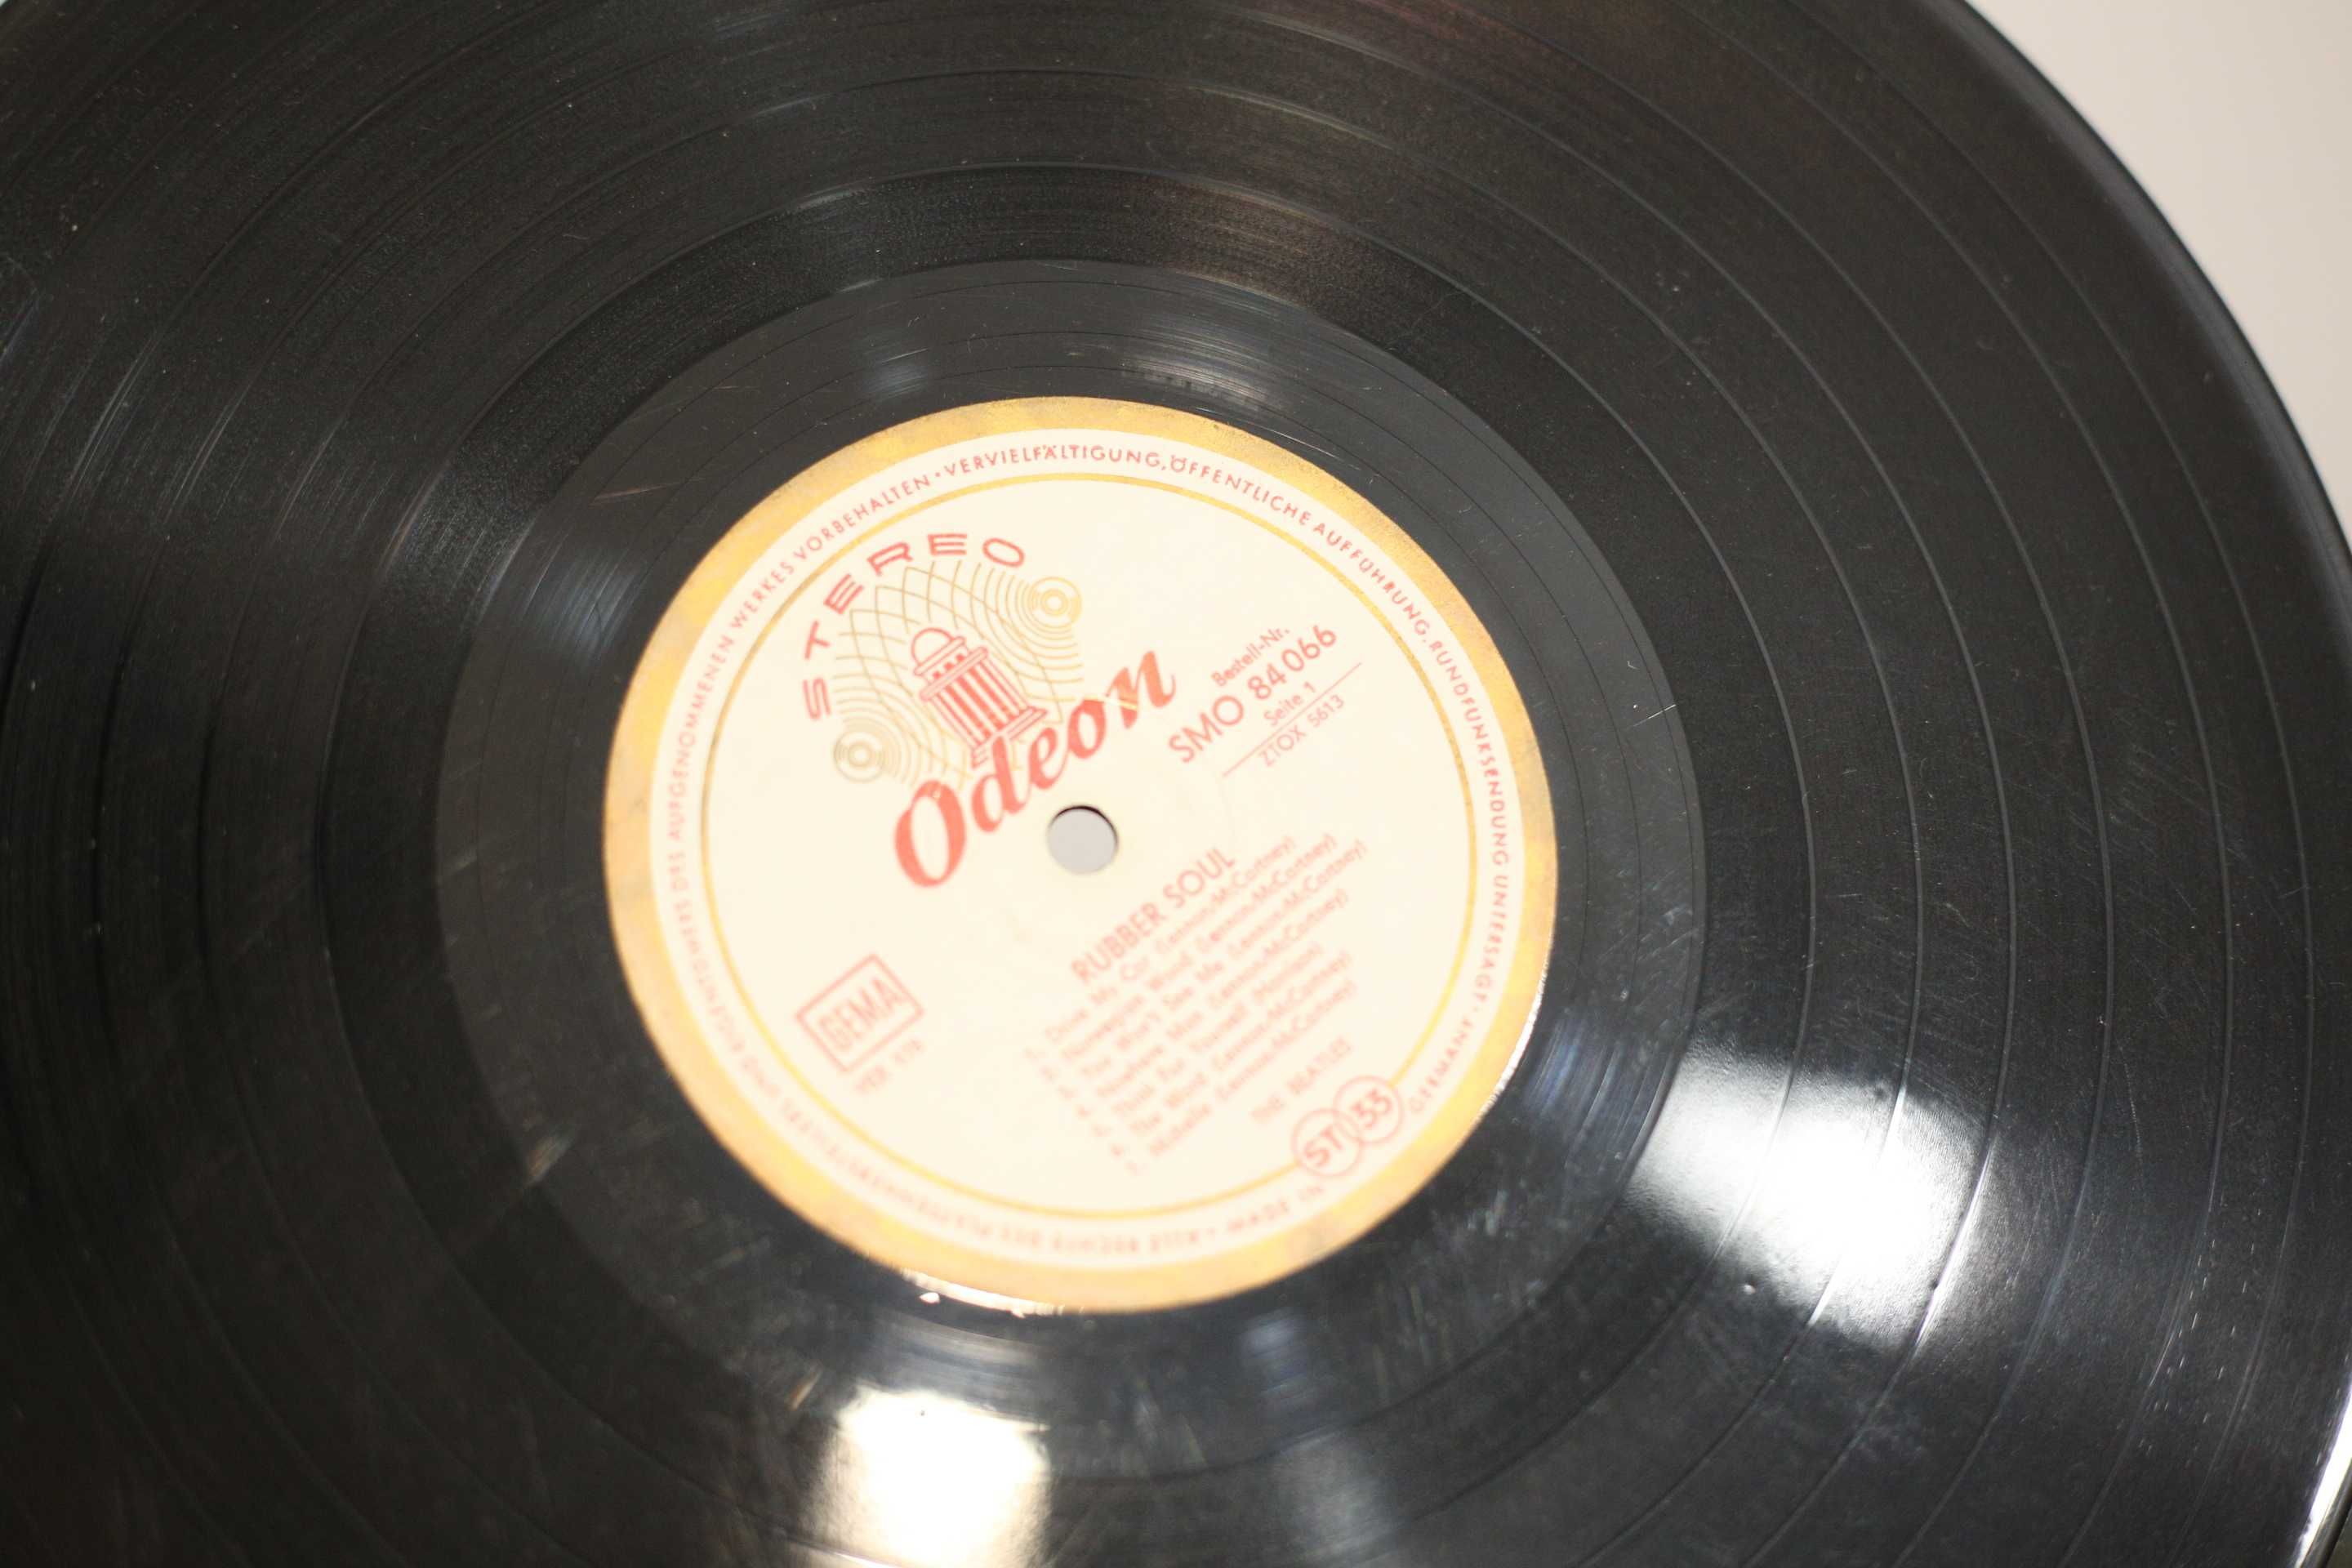 (C) Winyl The Beatles - Rubber Soul, pierwsze wydanie niemieckie Odeon